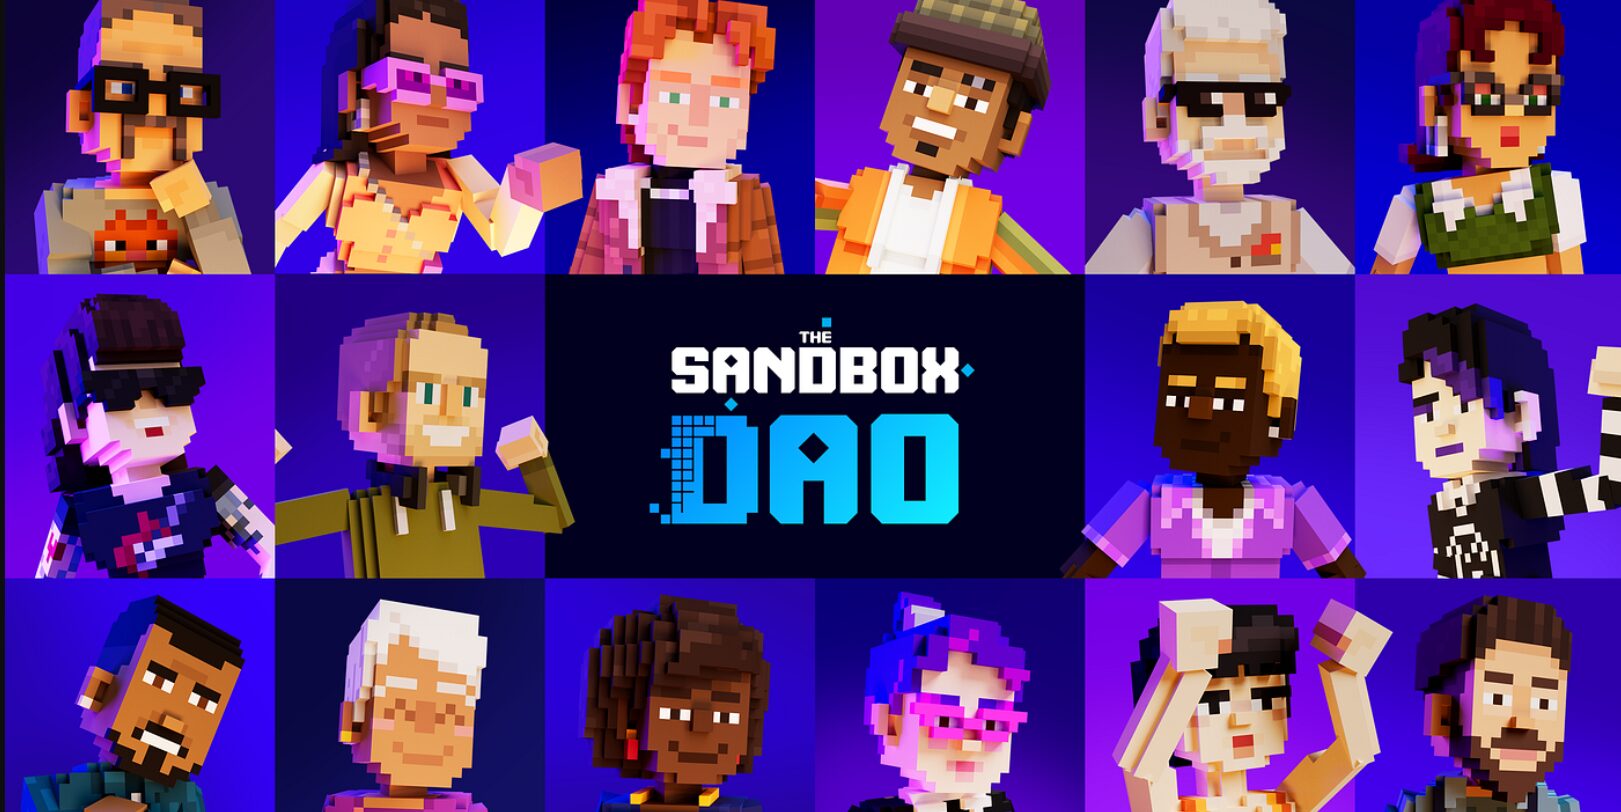 Sandbox spouští své vlastní DAO s první sadou návrhů, které jsou nyní k dispozici pro hlasování